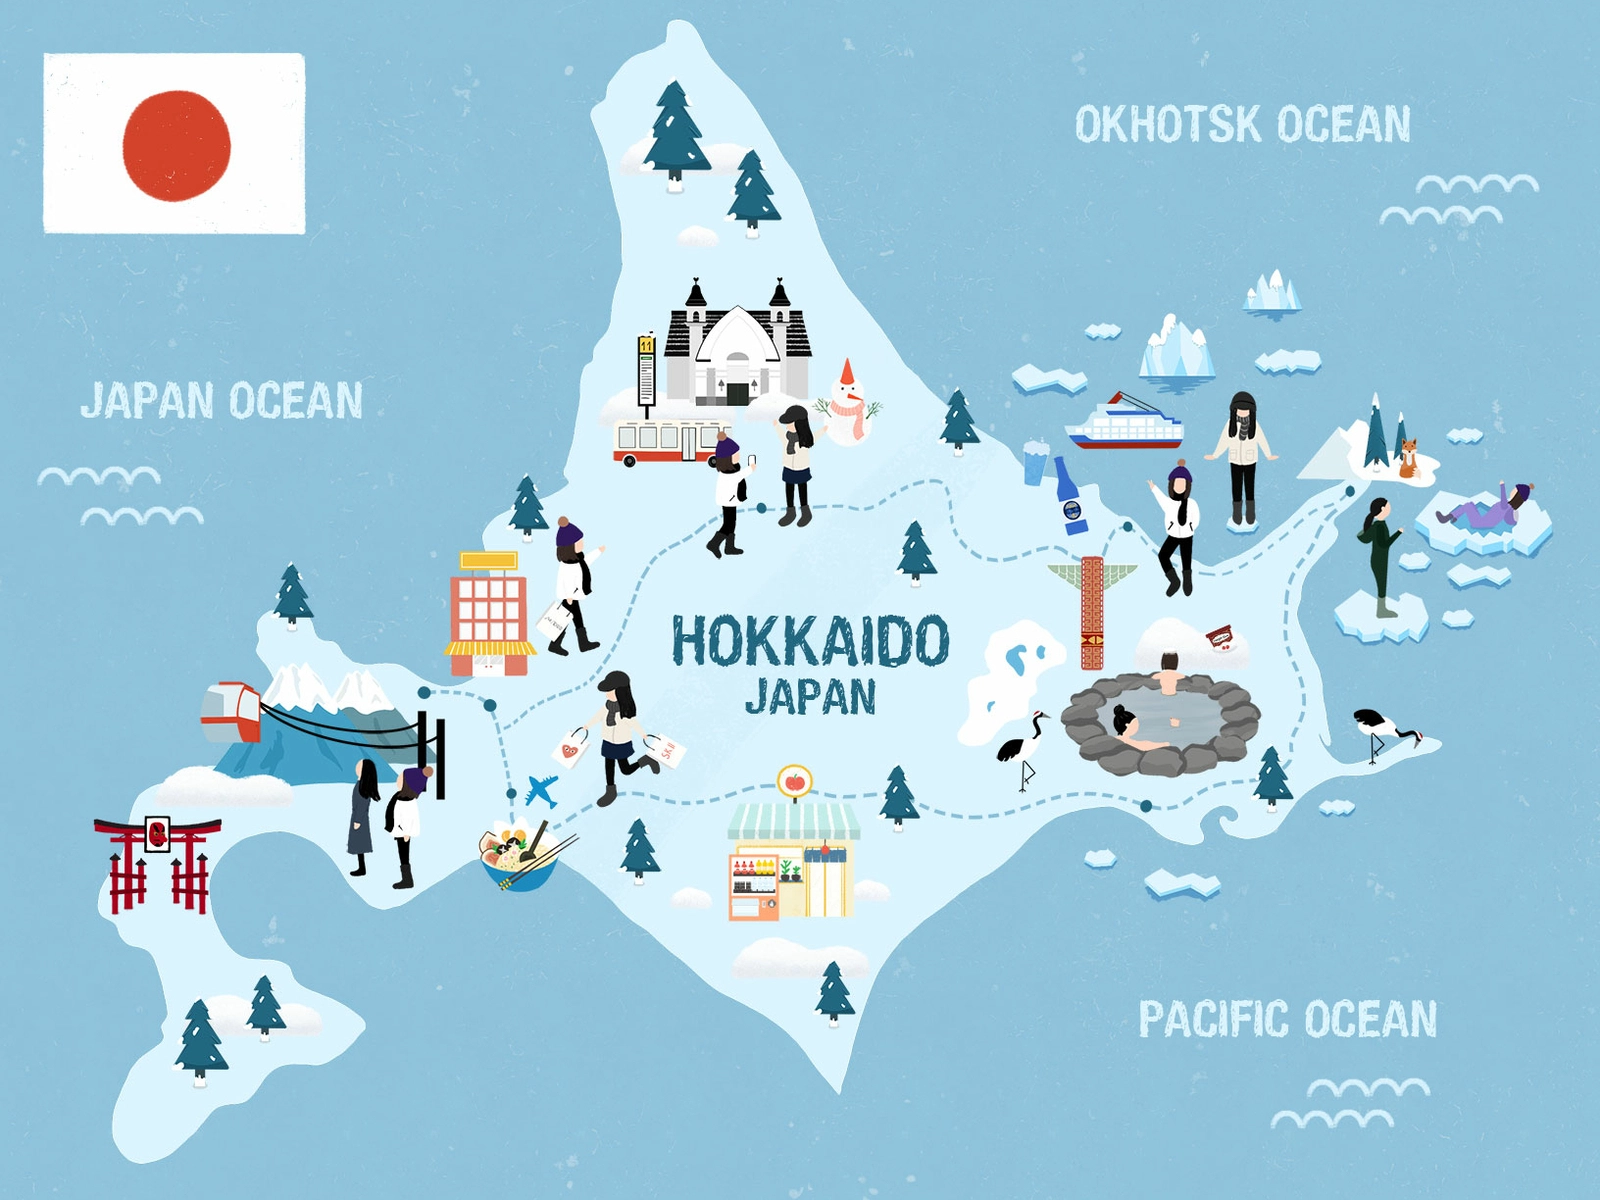 Hokkaido, Japan - Map